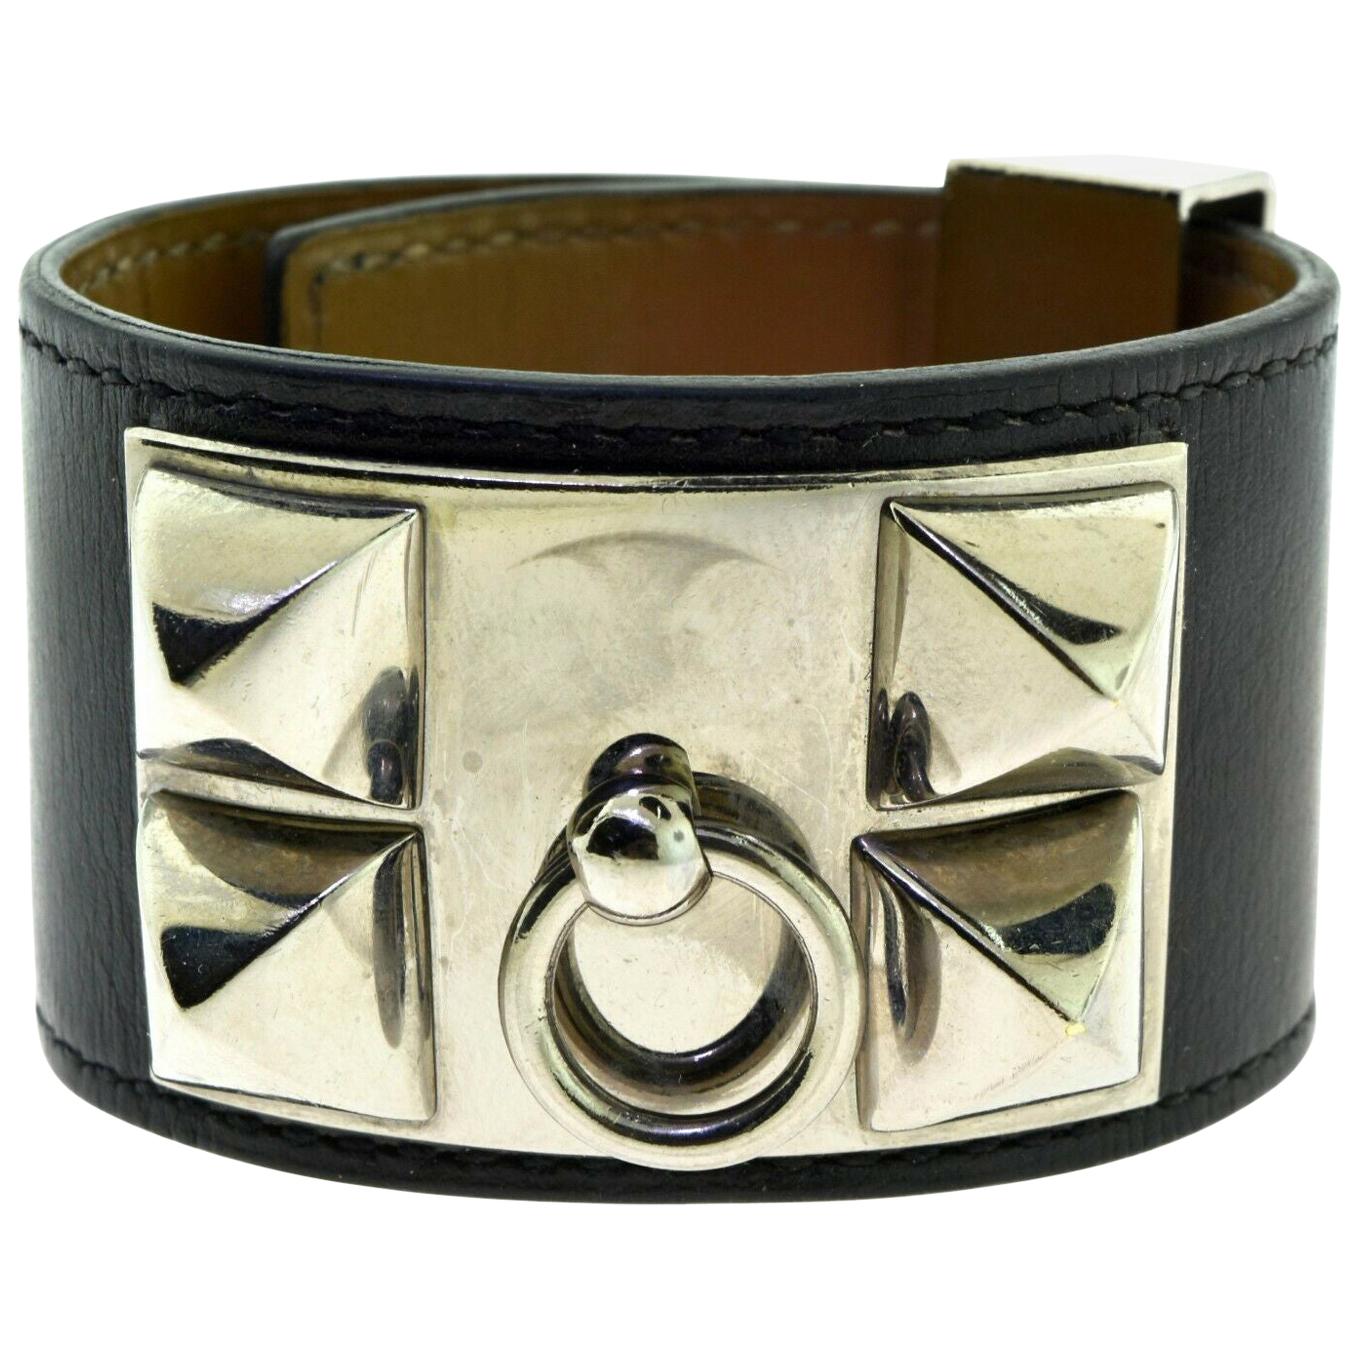 Hermès Collier de Chien Bracelet in Box Calfskin, Pyramid Studs